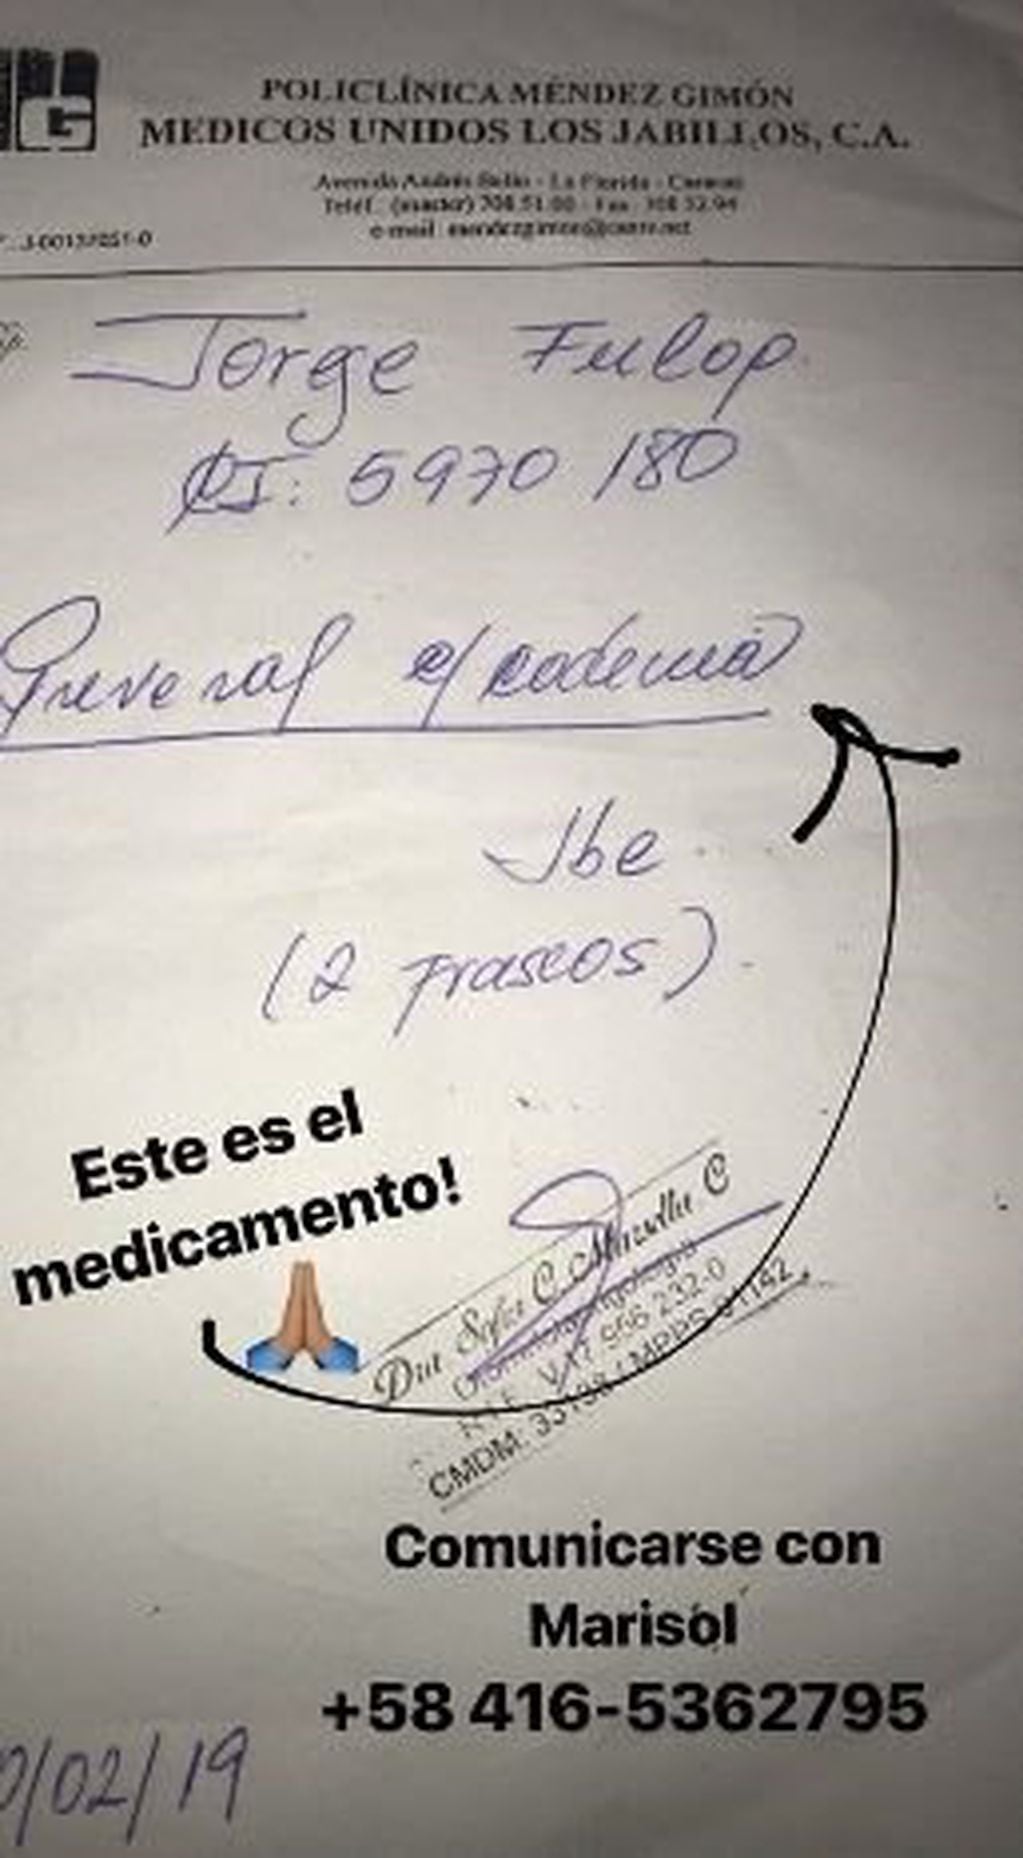 Catherine Fulop pide ayuda para conseguir los medicamentos que precisa su hermano en Venezuela. Instagram/fulopcatherine